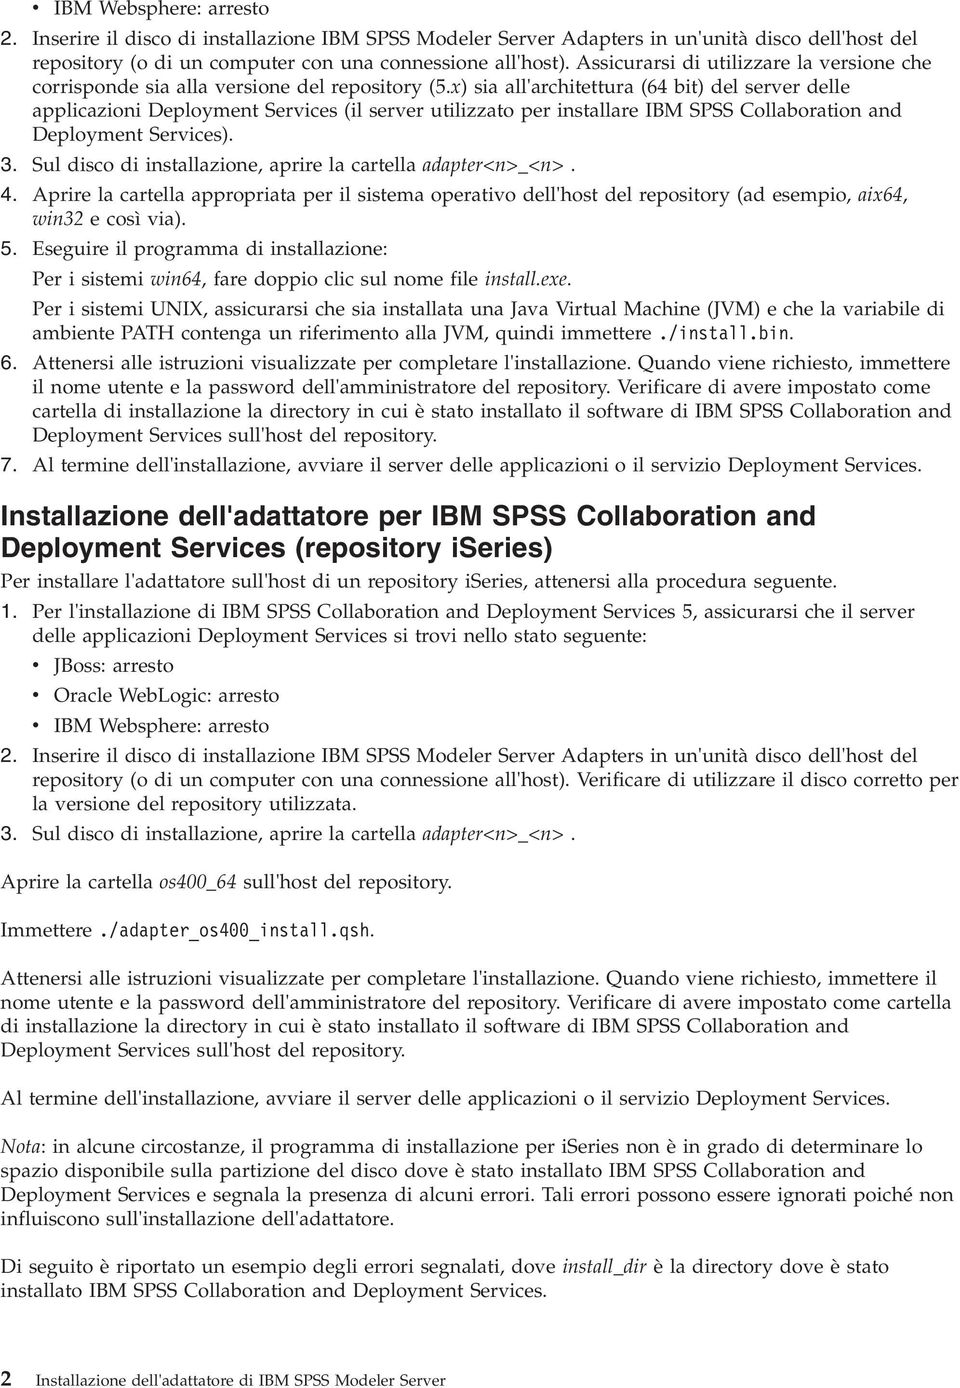 x) sia all'architettura (64 bit) del server delle applicazioni Deployment Services (il server utilizzato per installare IBM SPSS Collaboration and Deployment Services). 3.